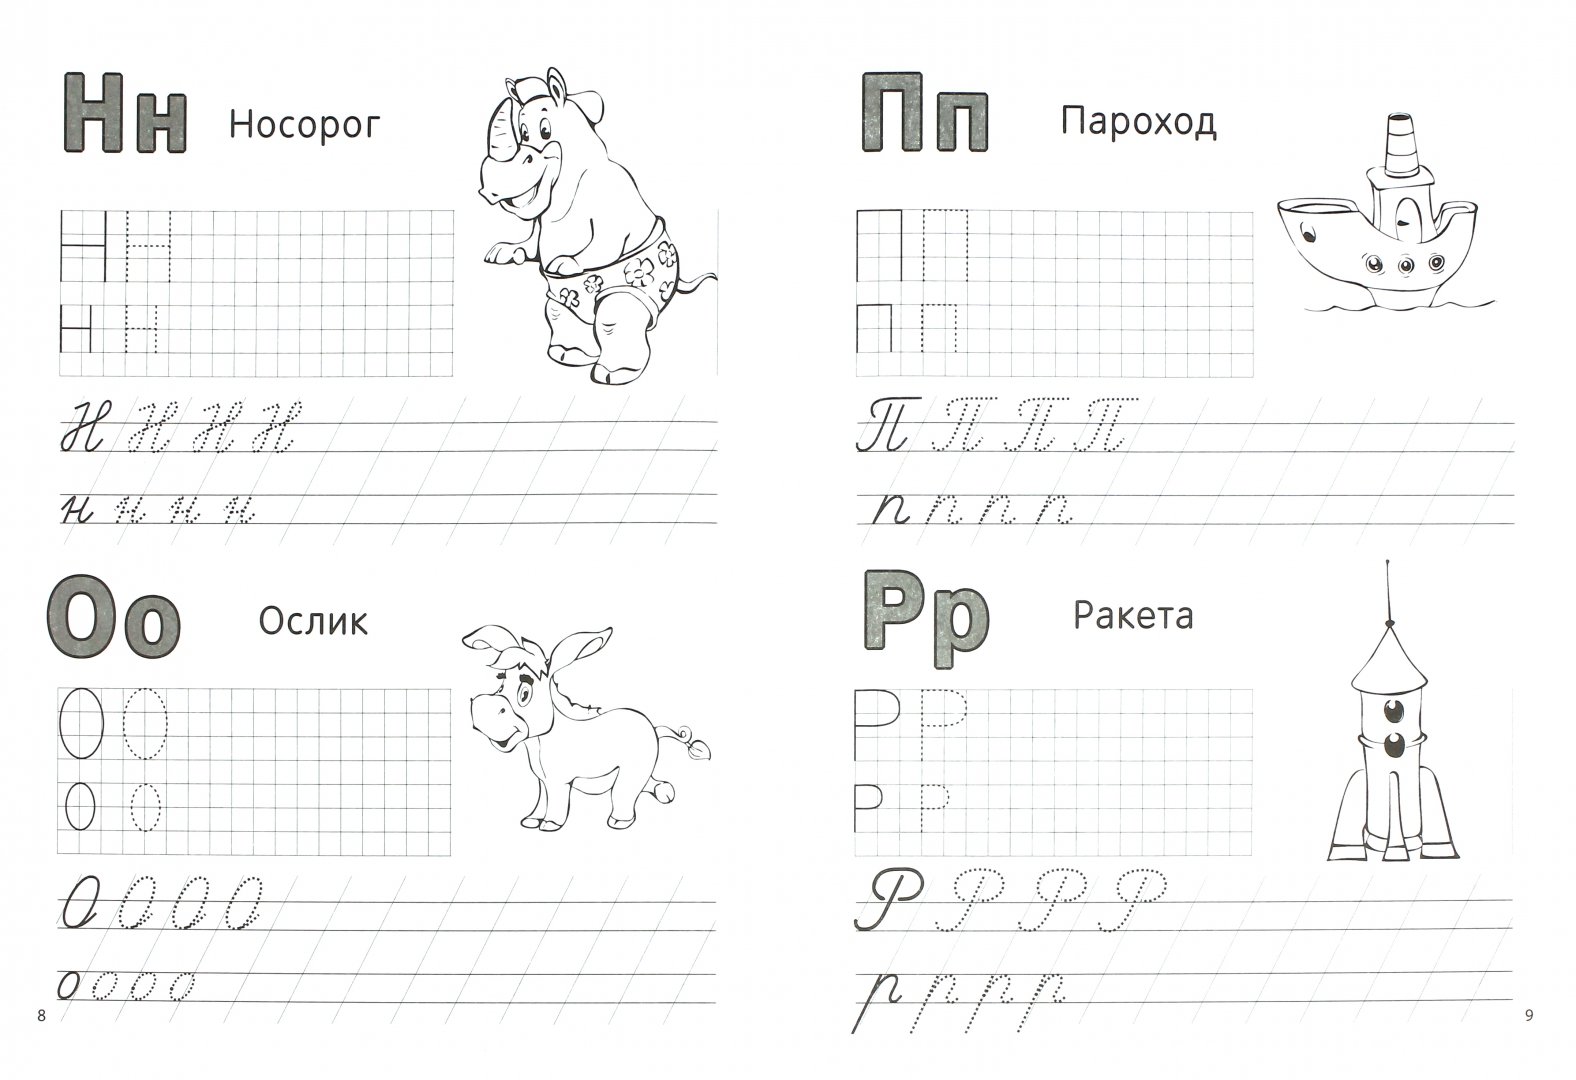 Иллюстрация 1 из 5 для Азбука. Учим буквы, пишем, раскрашиваем | Лабиринт - книги. Источник: Лабиринт